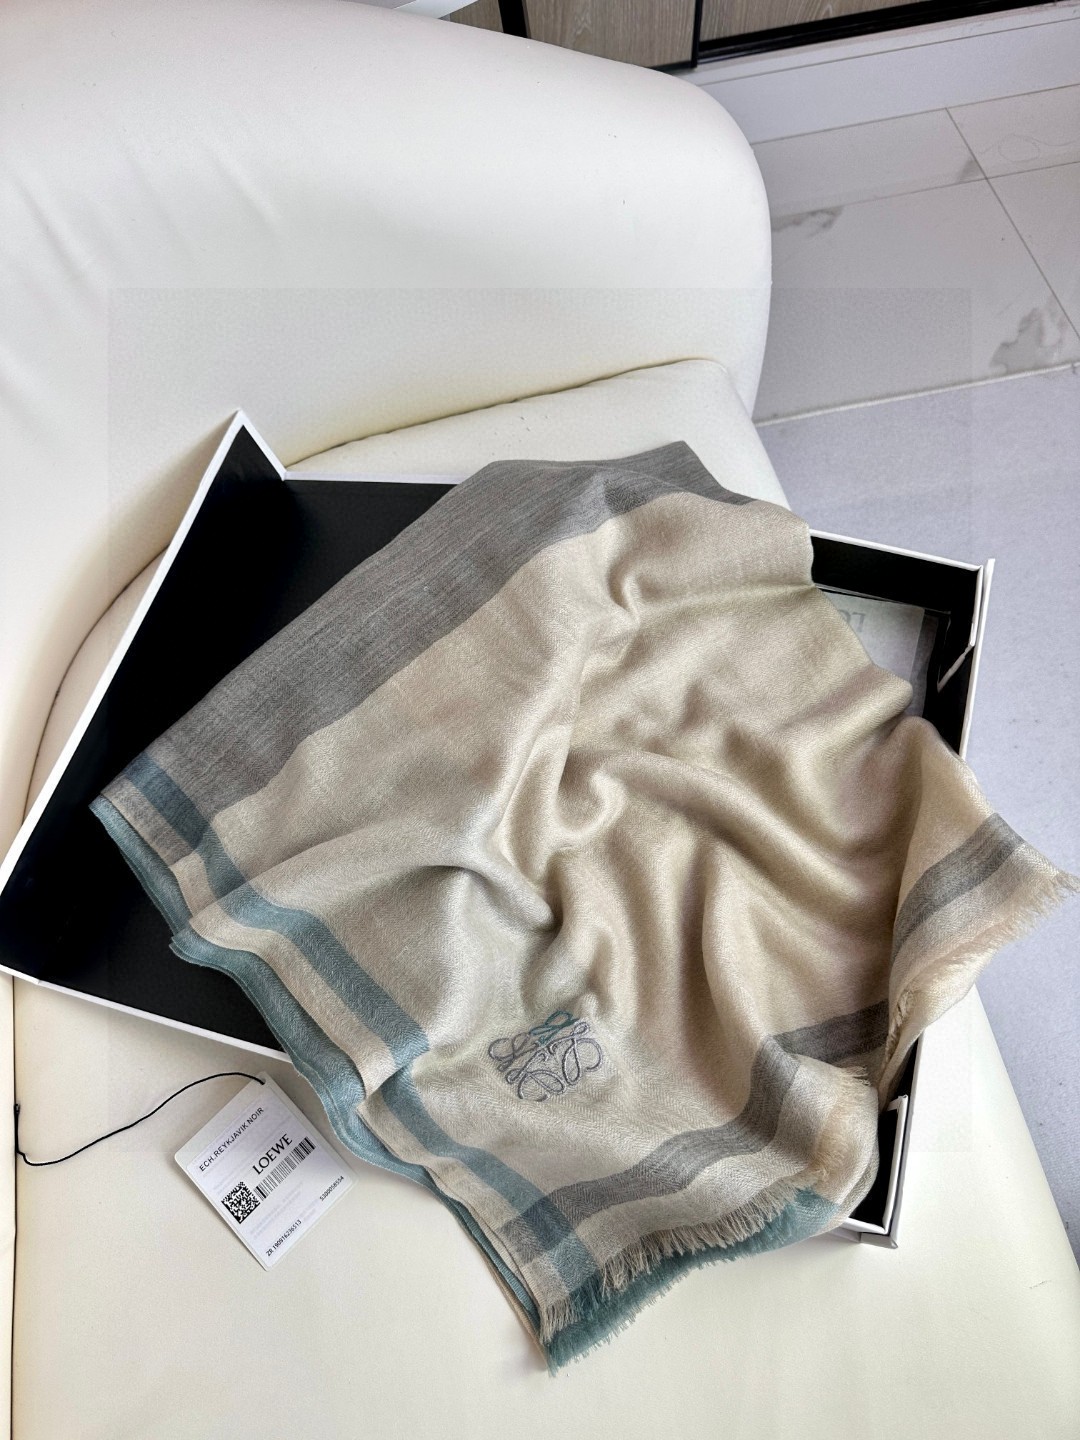 罗意威LW轻盈格纹长巾很幸运拿到這个品牌的东西真的不多见很少在国內做订单款式真的少的可怜️️️罗意威作为